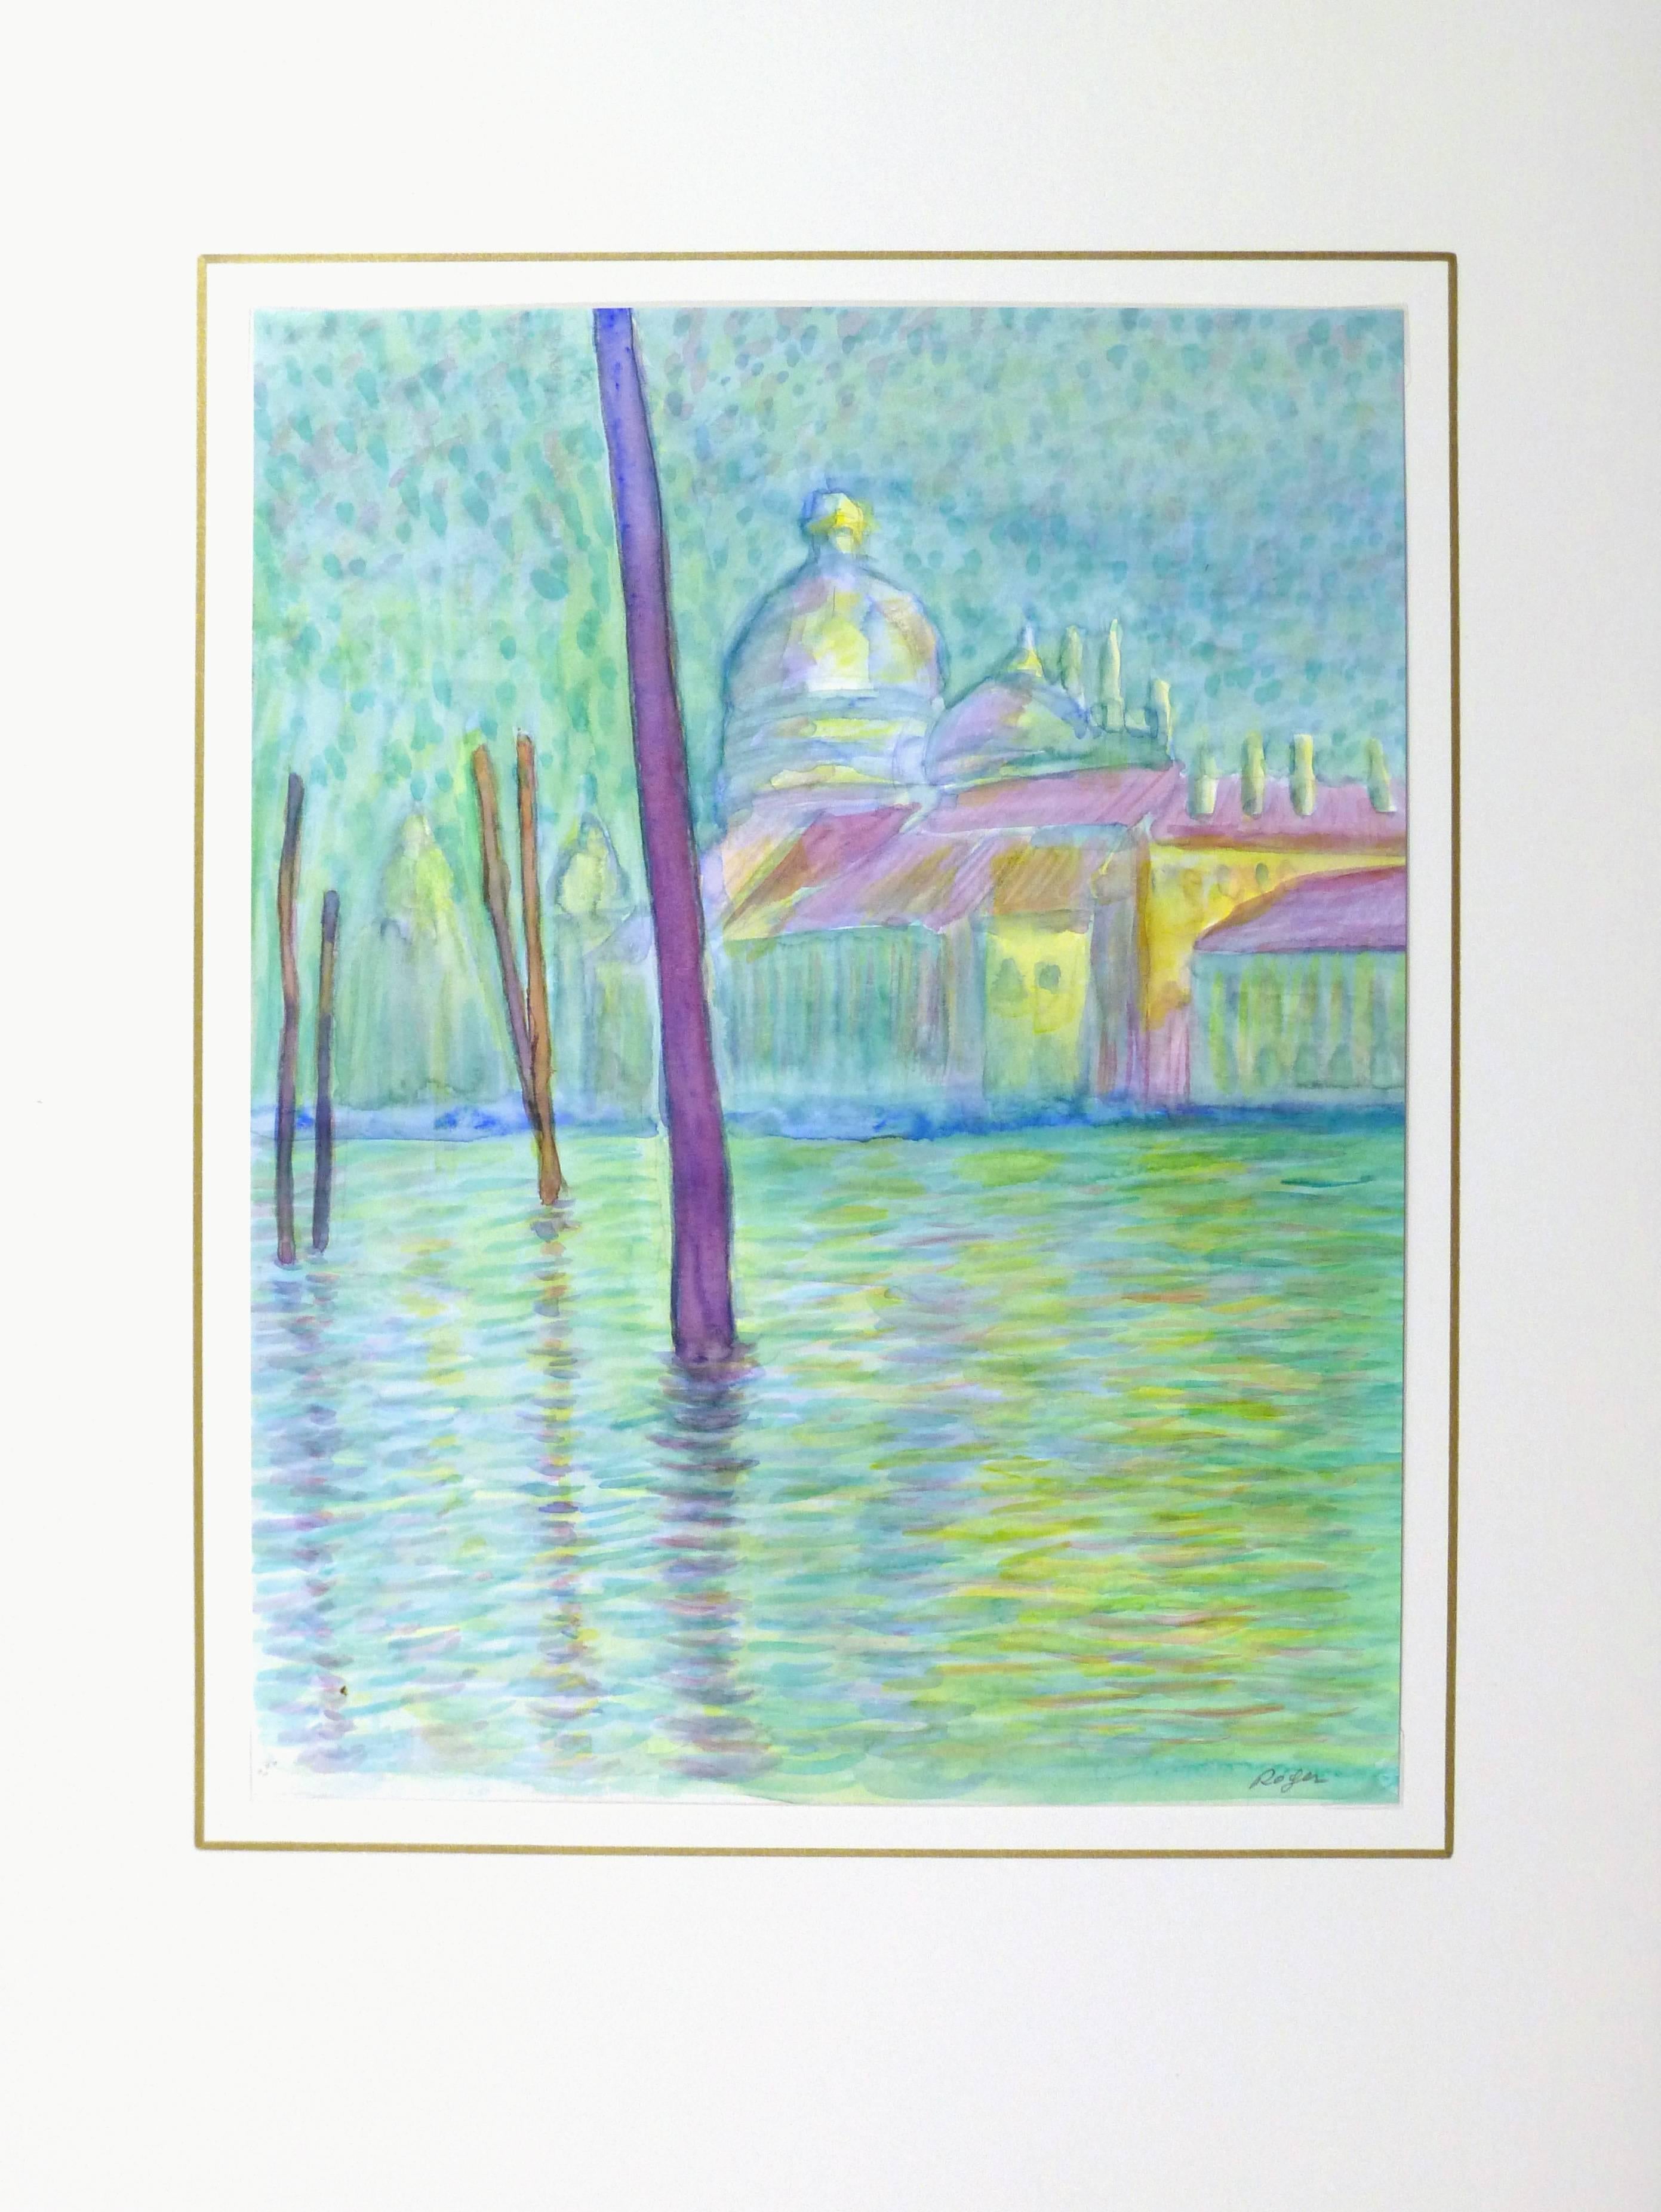 Impressionistisches Aquarell einer frühabendlichen Szene entlang der Kanäle von Venedig, Italien, um 1990. Signiert unten rechts.

Einzigartiges Originalkunstwerk auf Papier, das auf einer weißen Matte mit Goldrand präsentiert wird. Die Matte